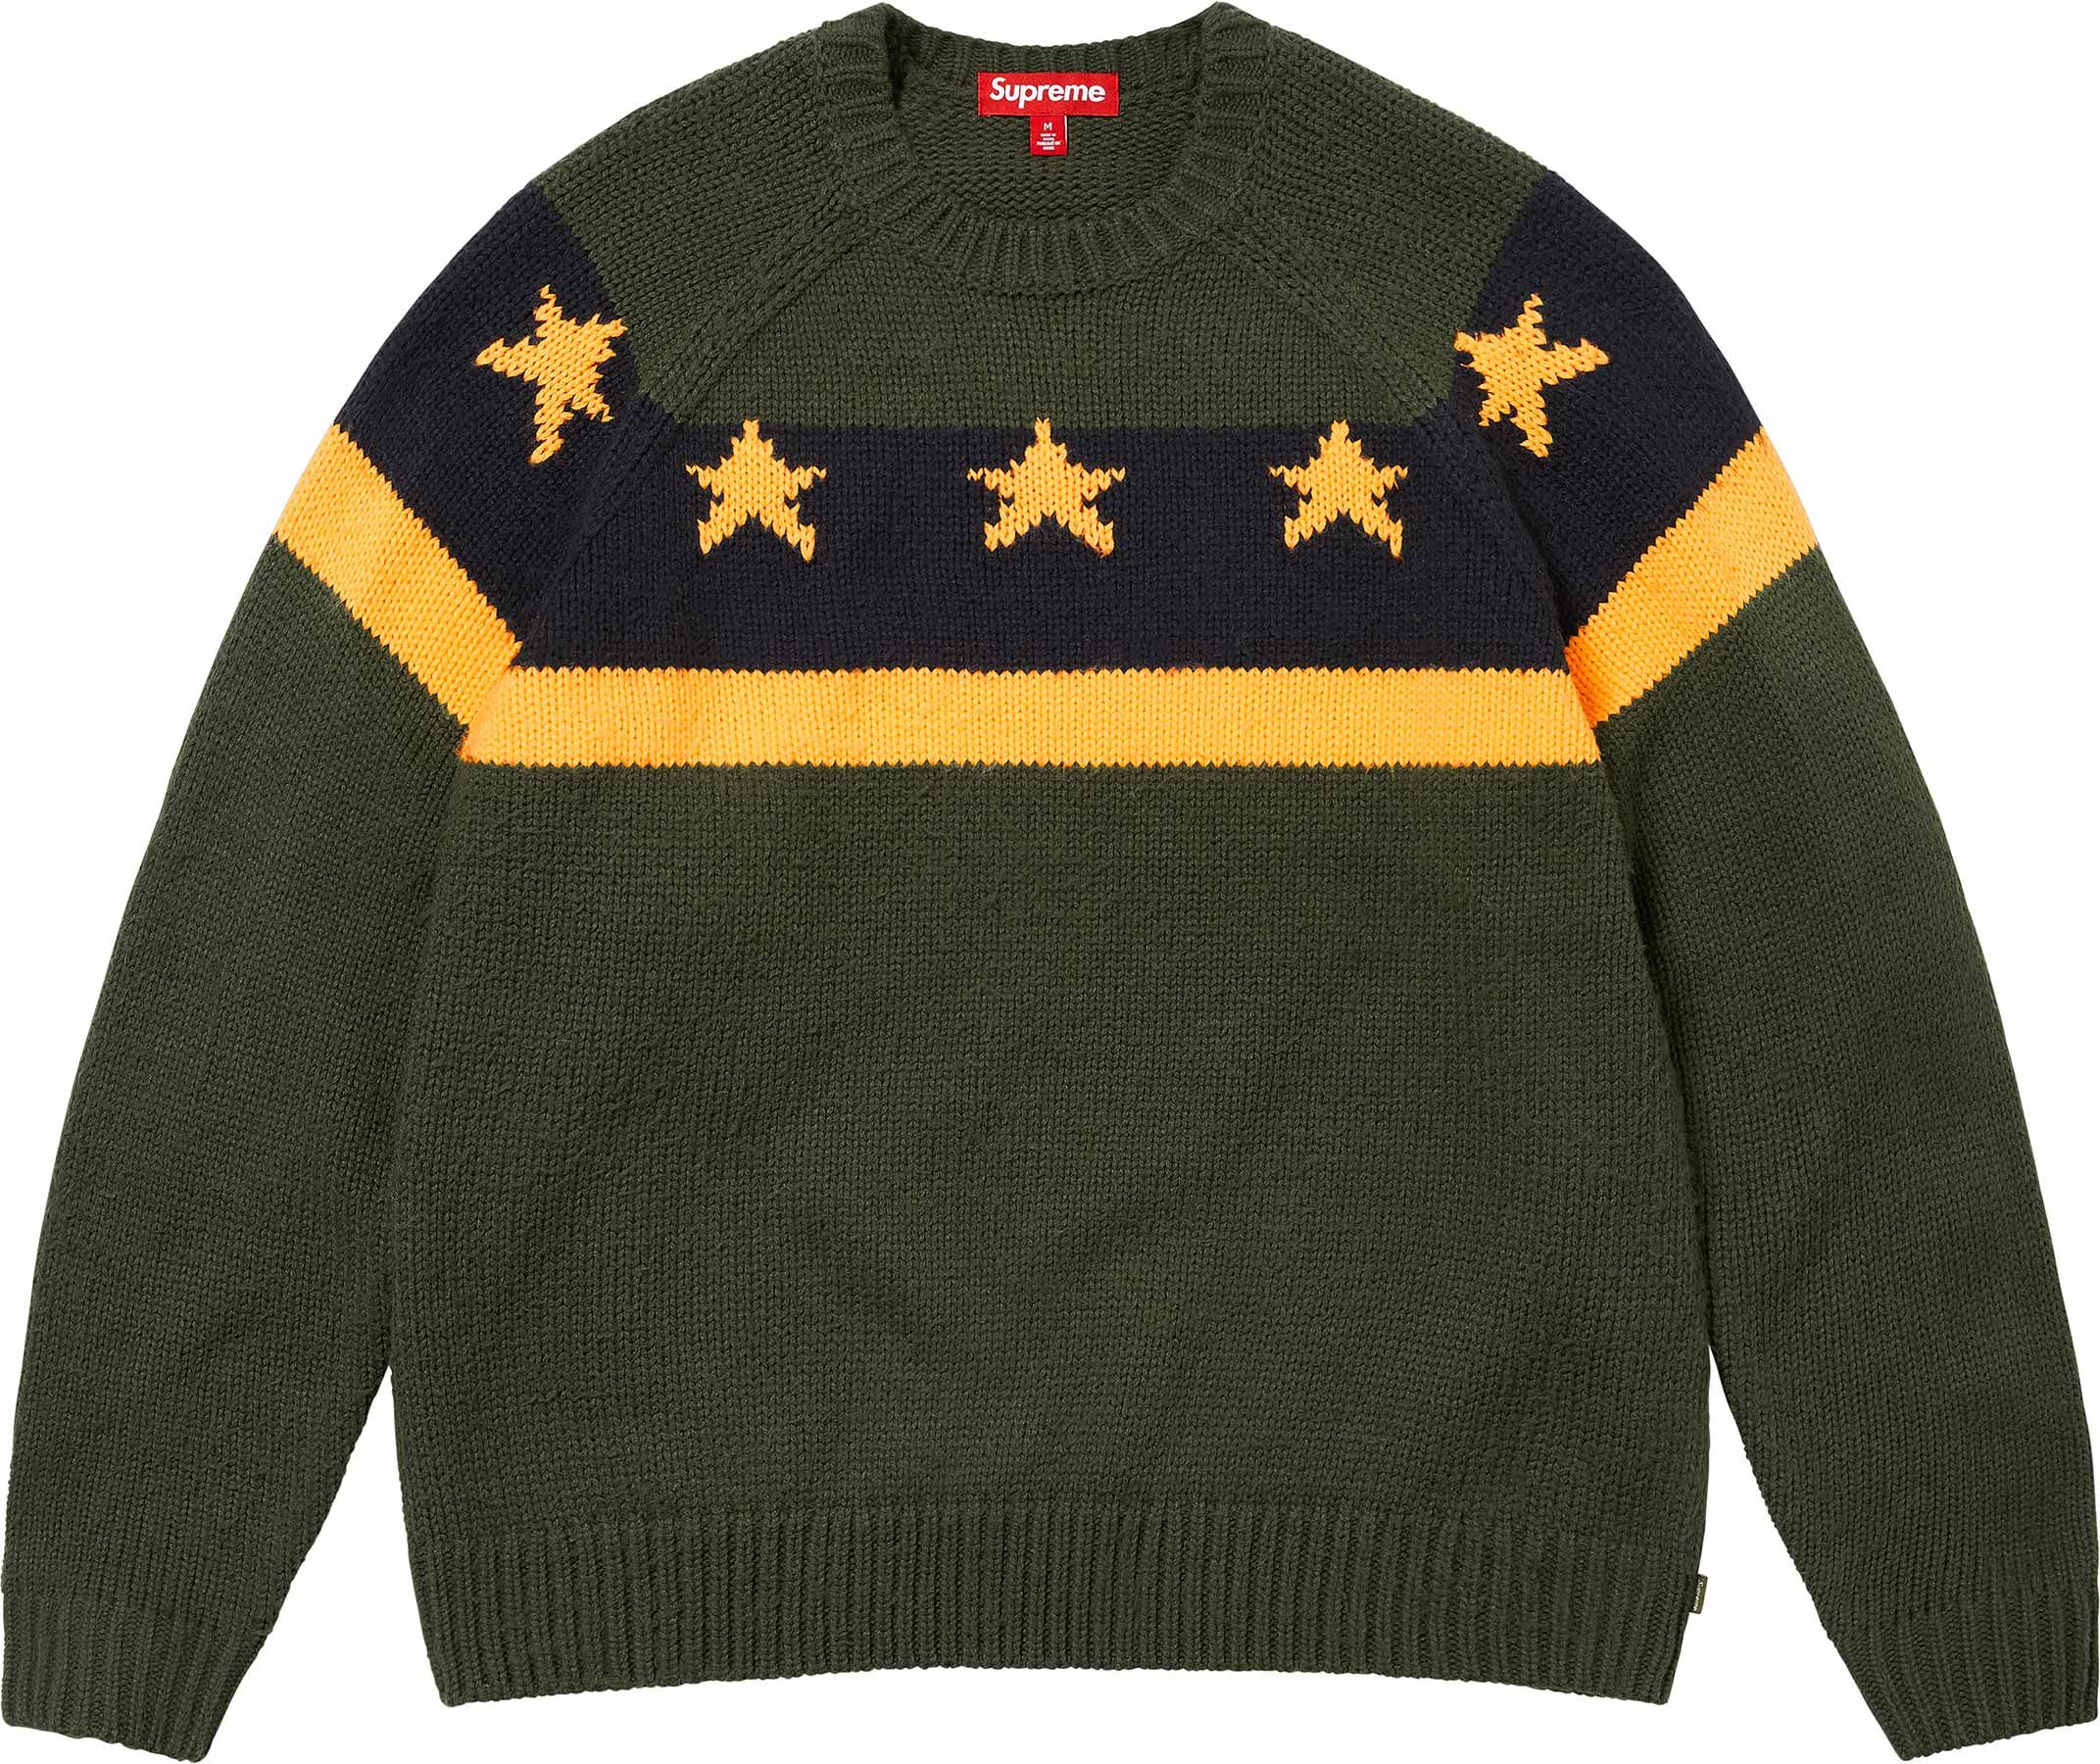 店舗良い Contrast Supreme トップス Arc XL Sweater トップス - www 